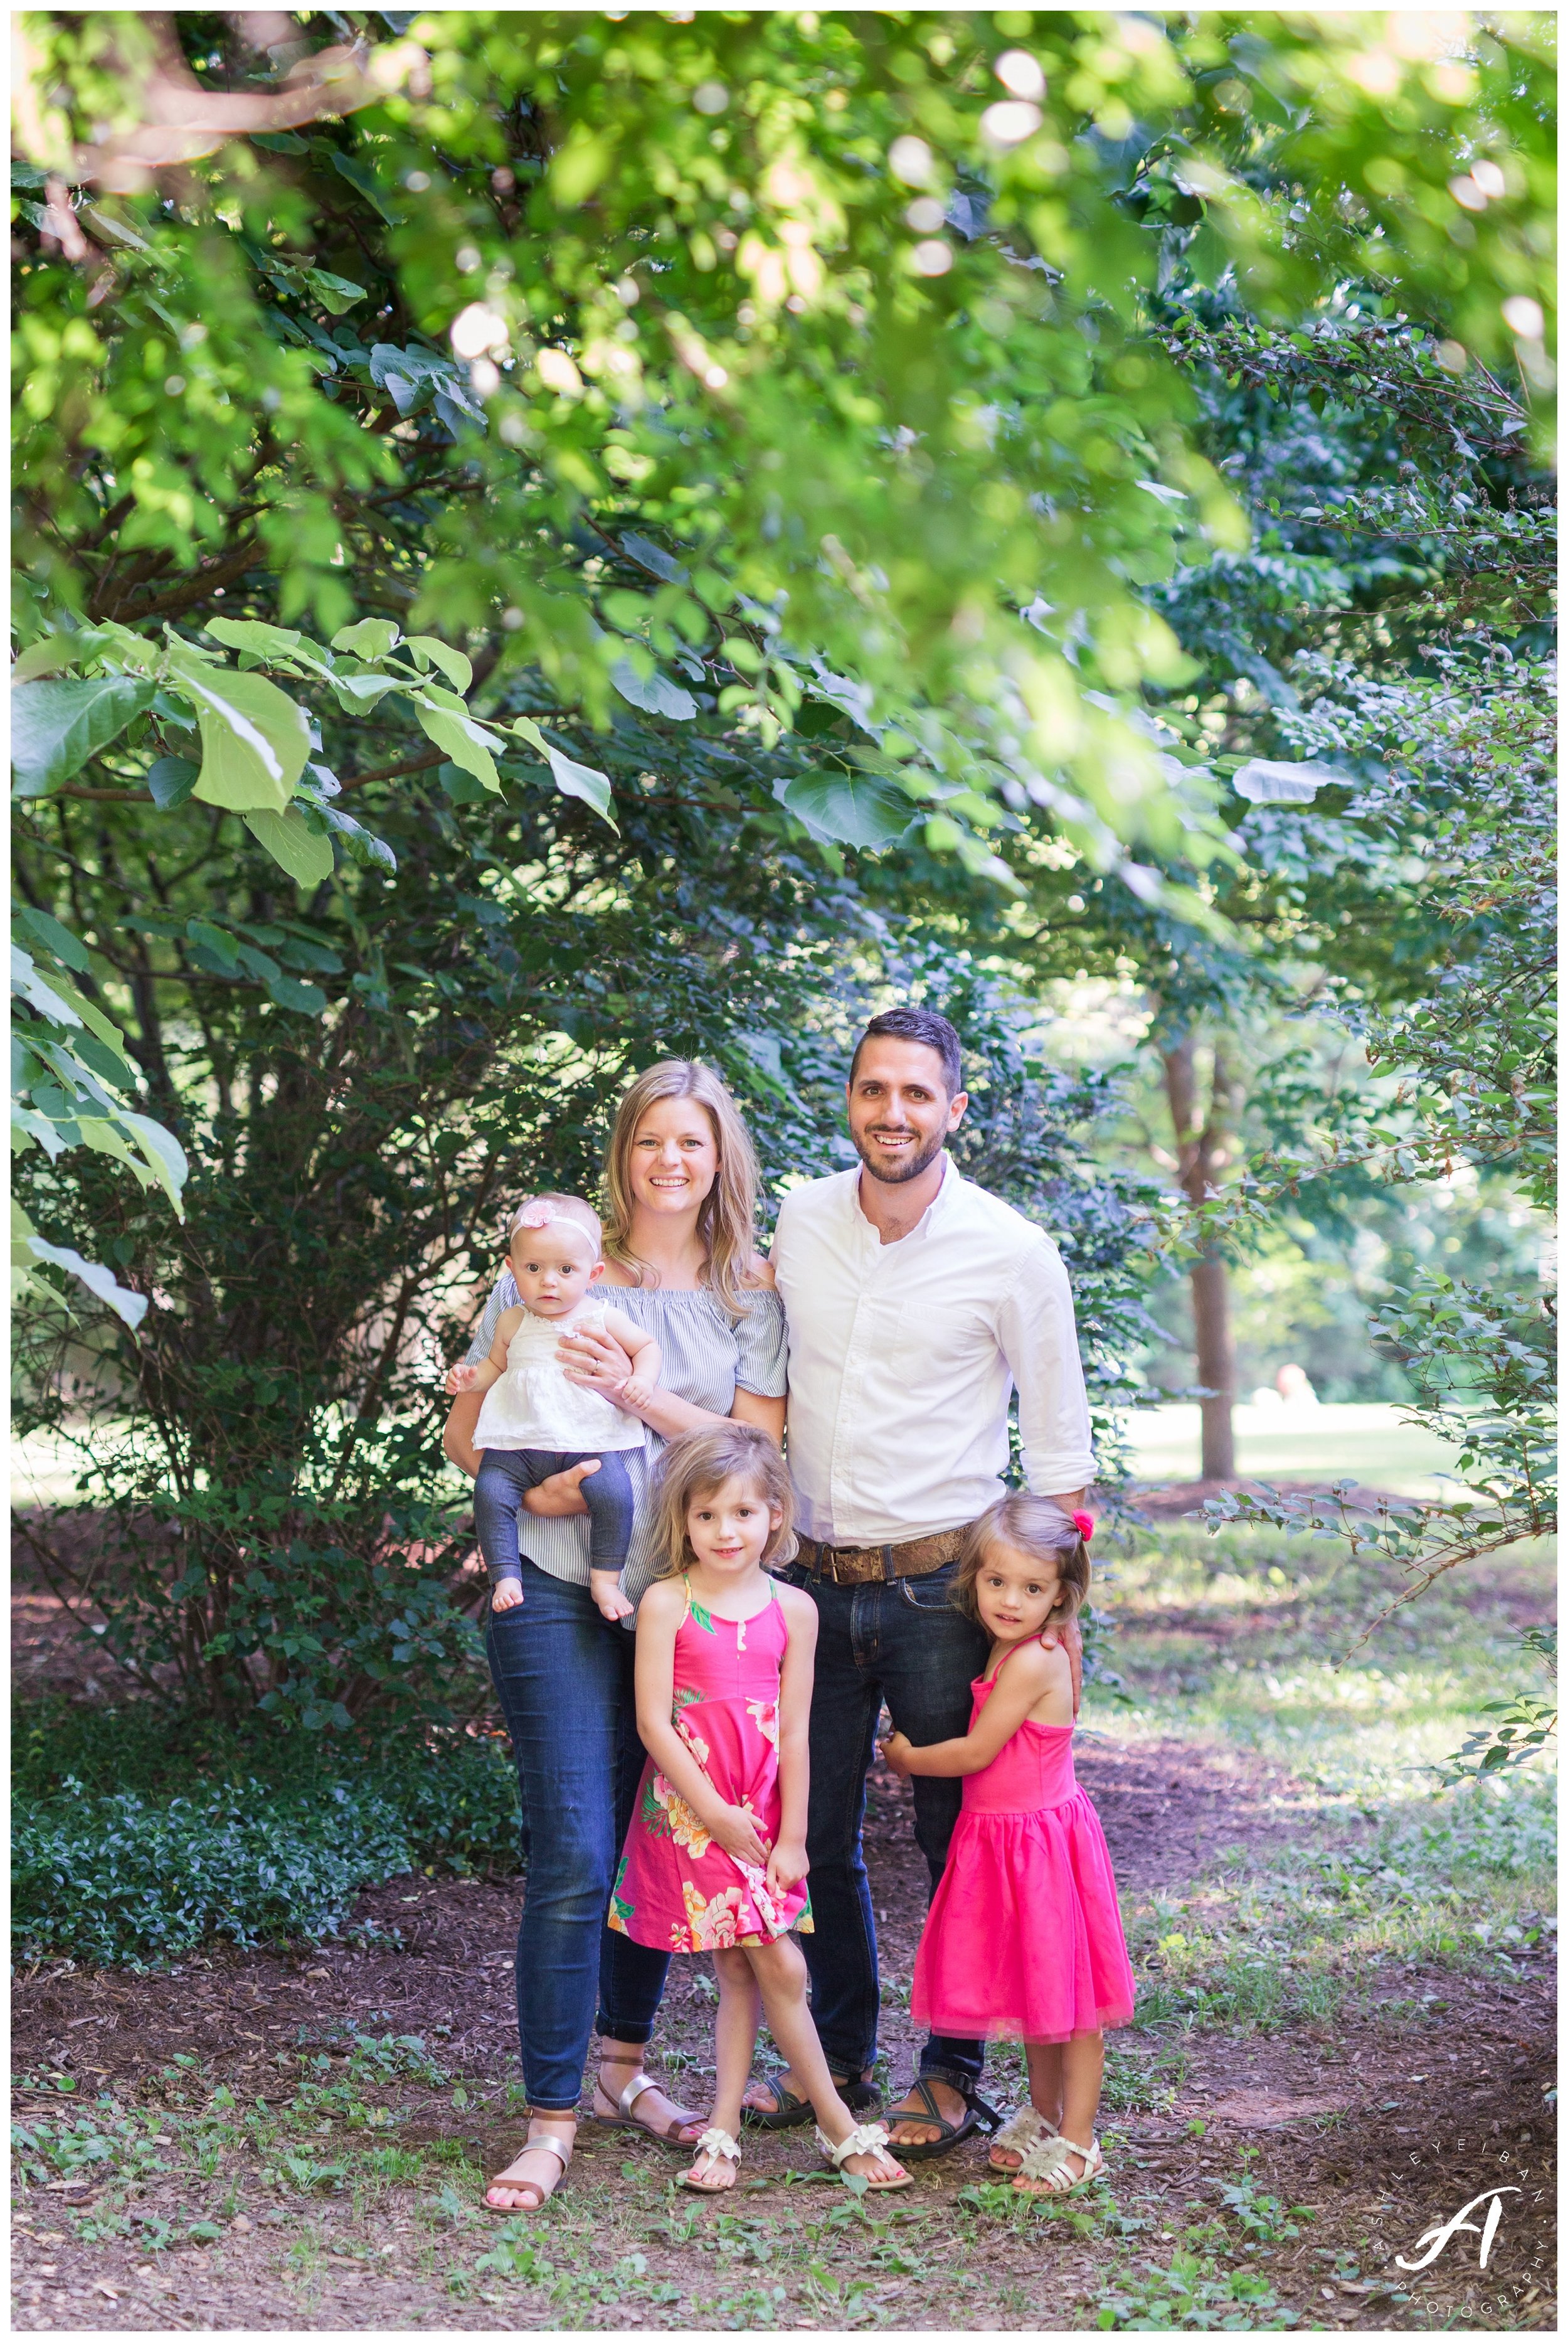 Charlottesville and Lynchburg Virginia Wedding and Family Photographer || Lynchburg Family Photo session || Ashley Eiban Photography || www.ashleyeiban.com